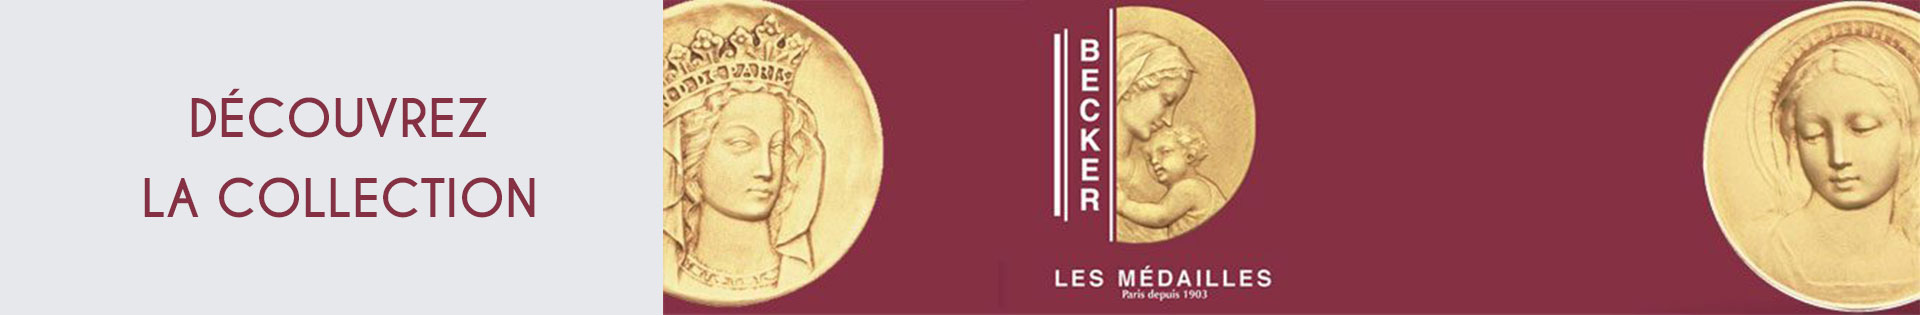 Médaille et symbole - Becker - Ange